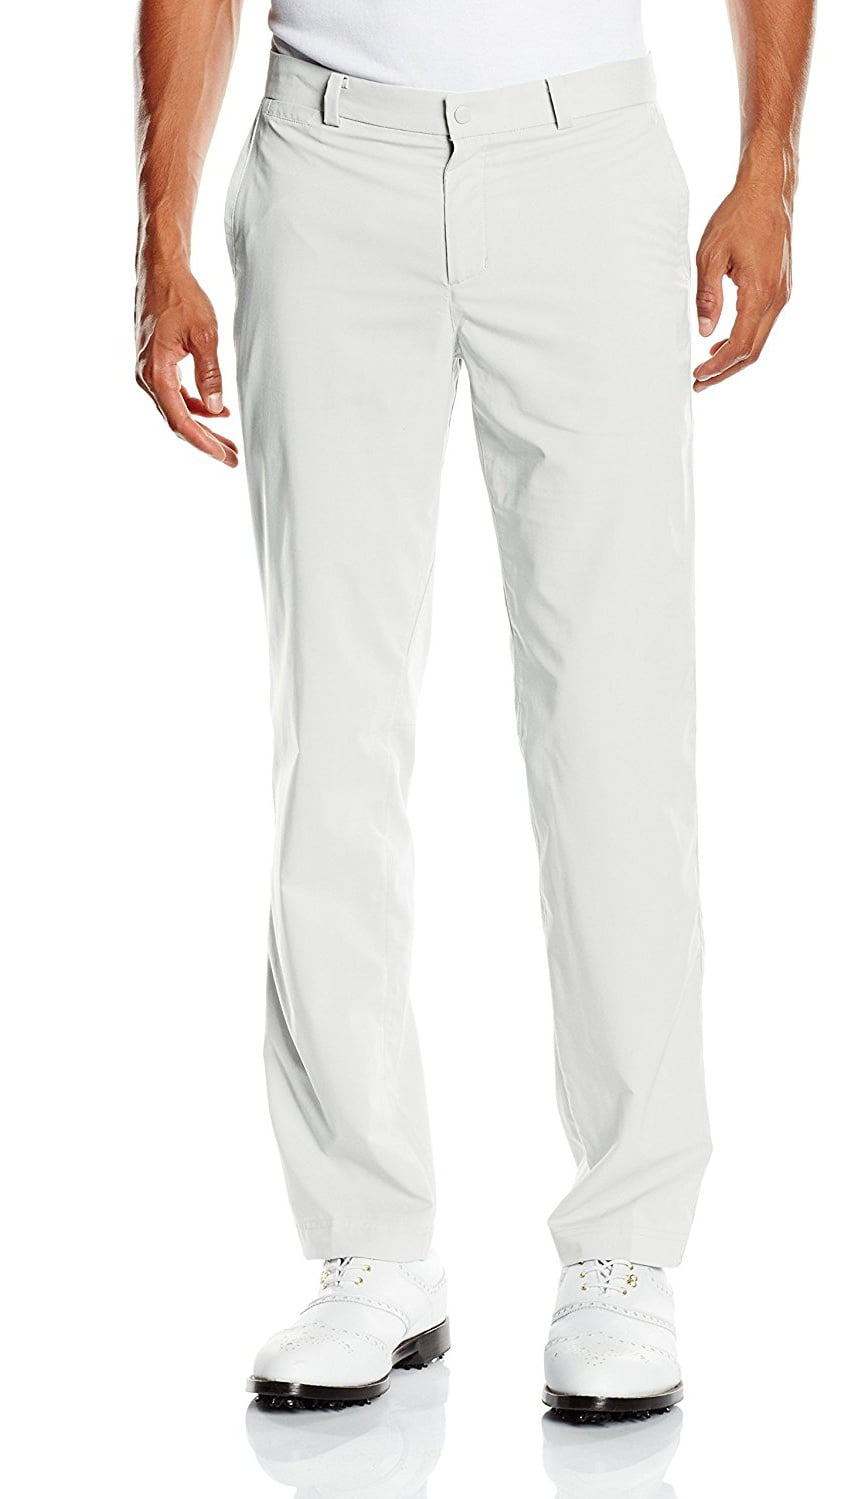 Nike Dri-Fit Modern Men's White Golf Pants Size 38x30 - Walmart.com